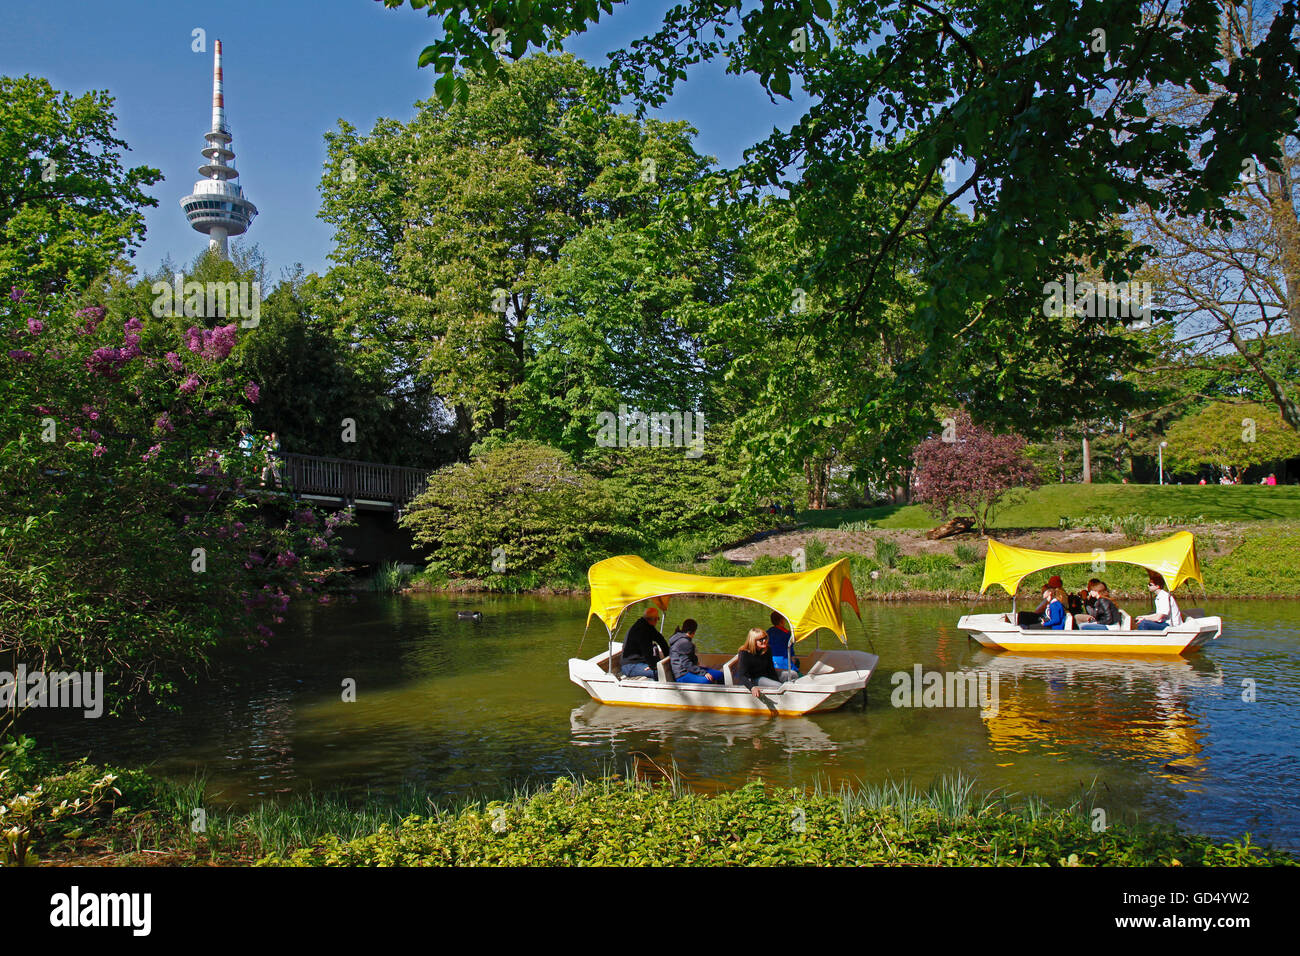 Kutzer Gondoletta barcos, estanque, torre de televisión, del parque Luisen, Mannheim, Baden-Wurttemberg, Alemania Foto de stock